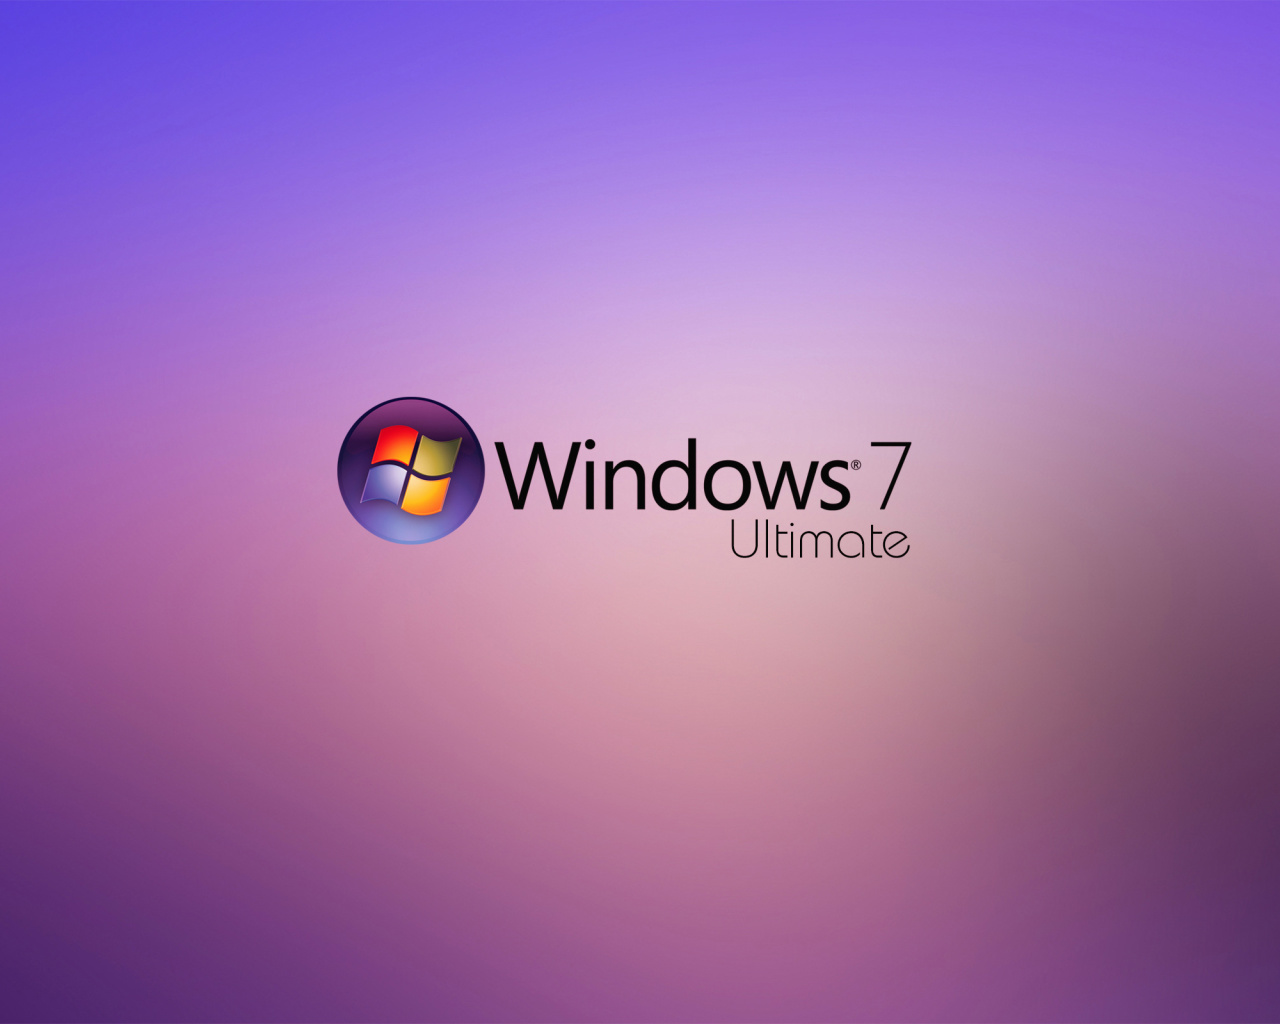 Обои Windows 7 Ultimate 1280x1024